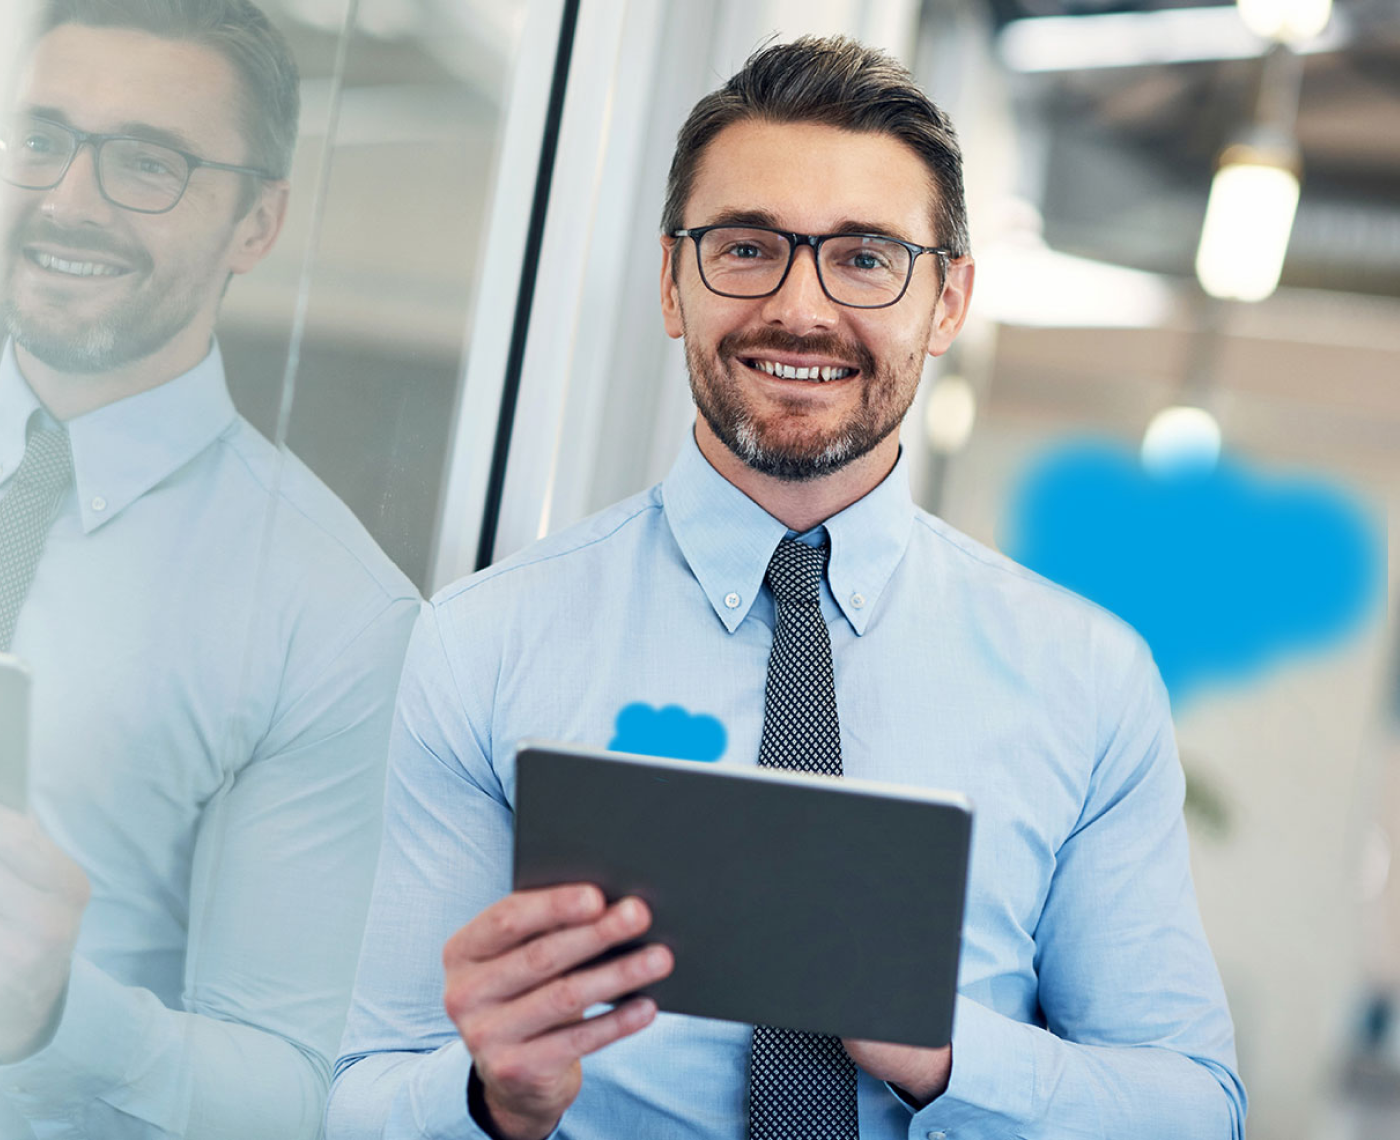 Salesforce agentur für salesforce beratung und implementierung SUNZINET - Bild auf ein Mann mit Brill und blauem Hemd schaut lachend in die Kamera, dabei hält er ein Tablet. 